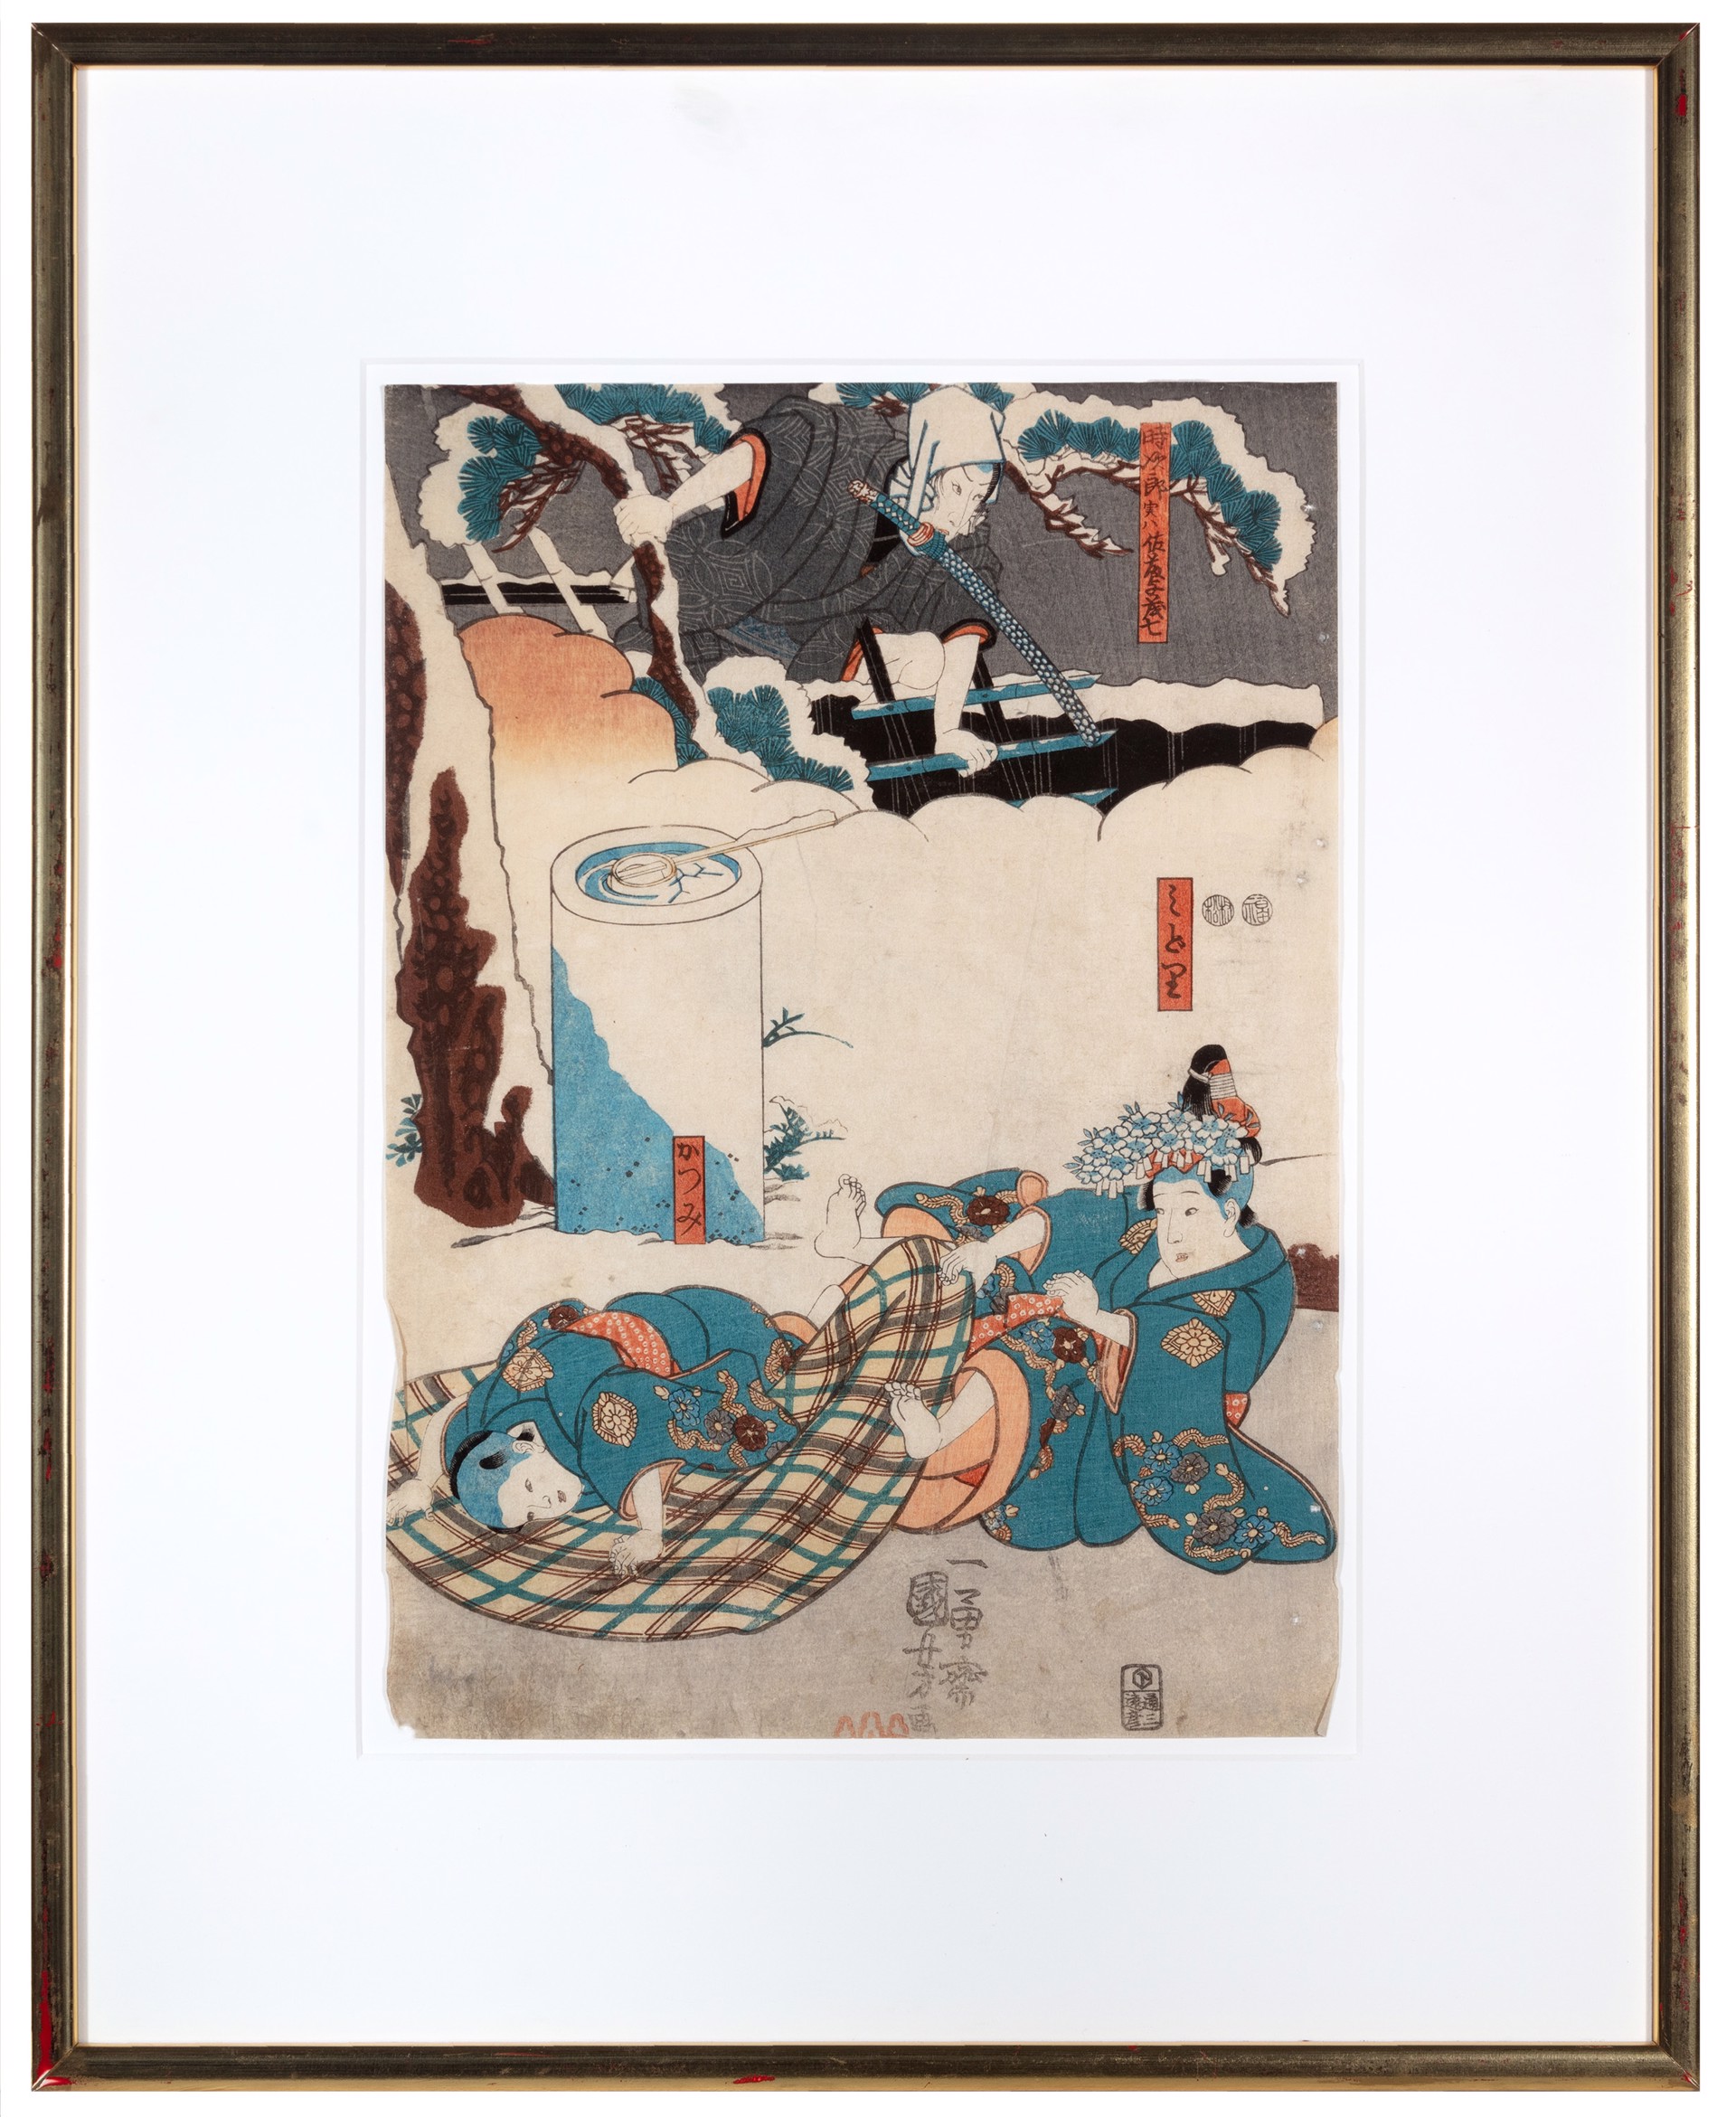 Tokijiro, Midori, and Katsumi by Utagawa Kuniyoshi